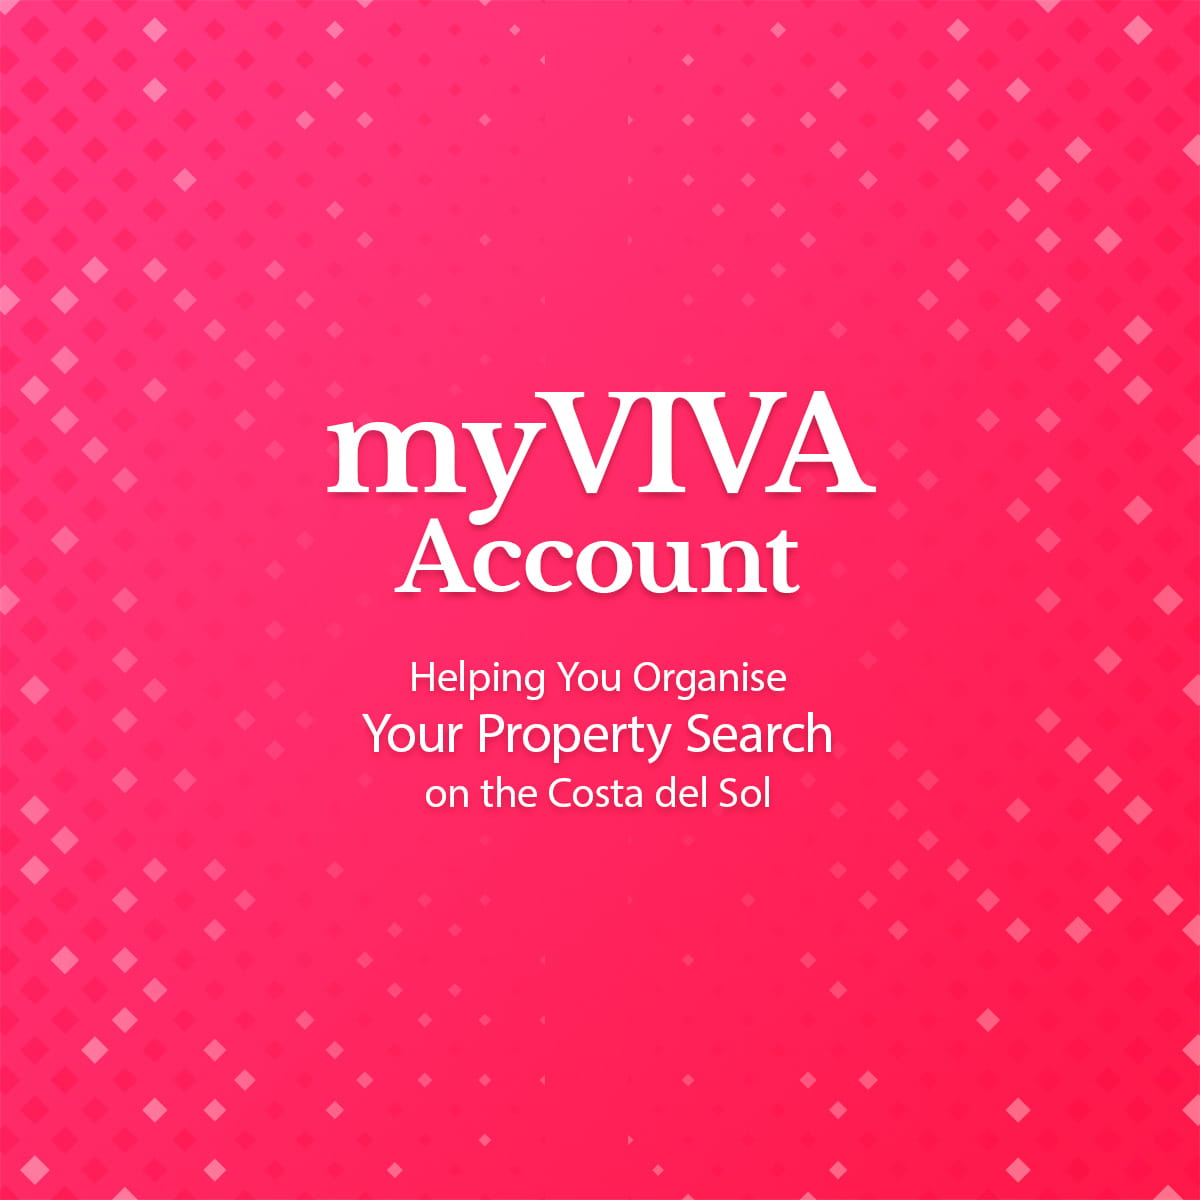 myVIVA Account. Register now!